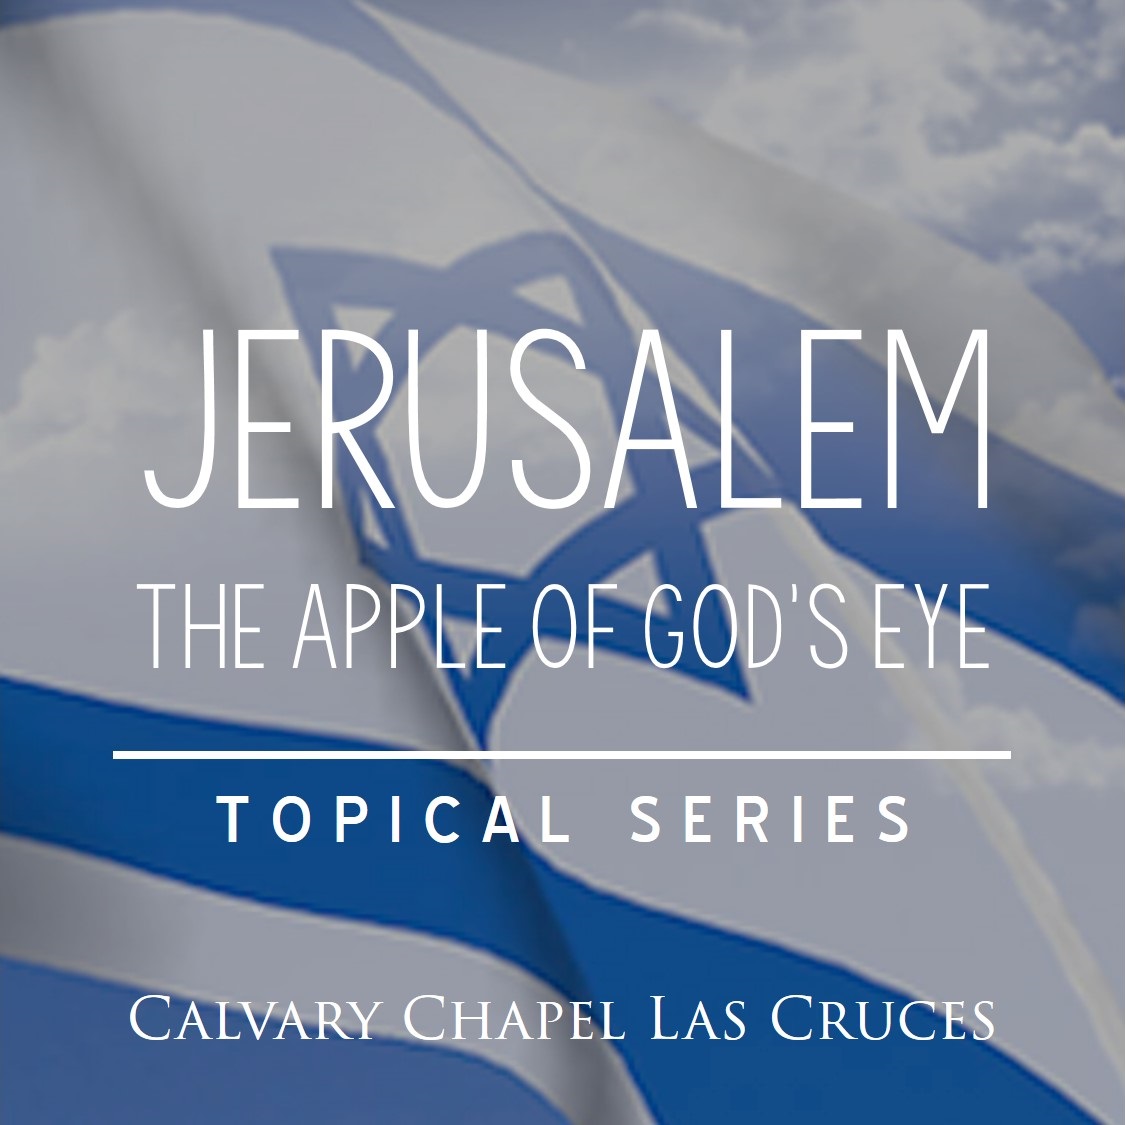 Jerusalem: The Apple of God’s Eye, Part 3